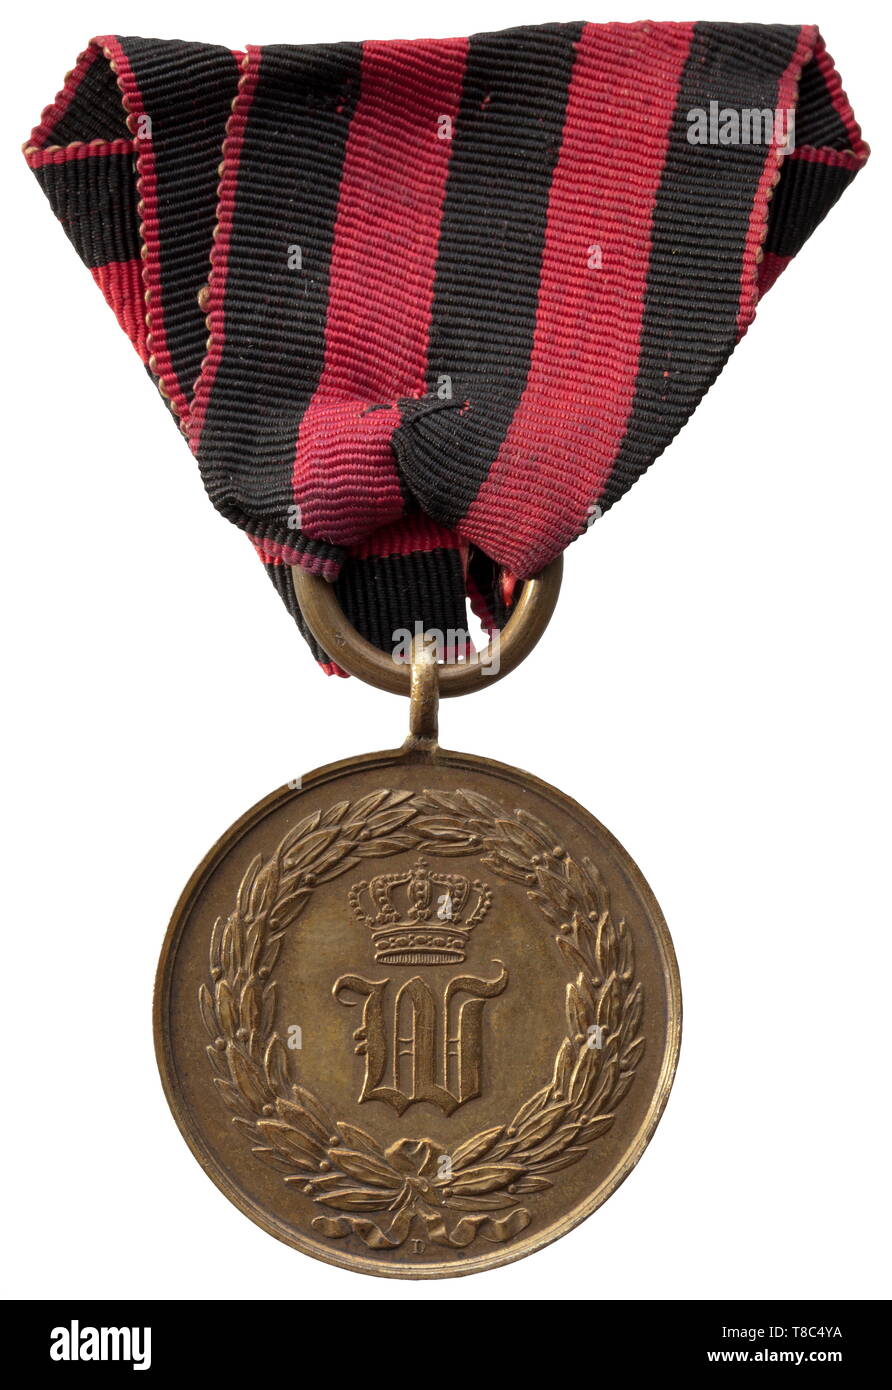 Une médaille commémorative de la guerre de Baden et de Schleswig-Holstein  1848 la médaille, découpe par Dietelbach Août Gottlieb, a 16 groupes de  feuilles de laurier et est signé "D". En 1849